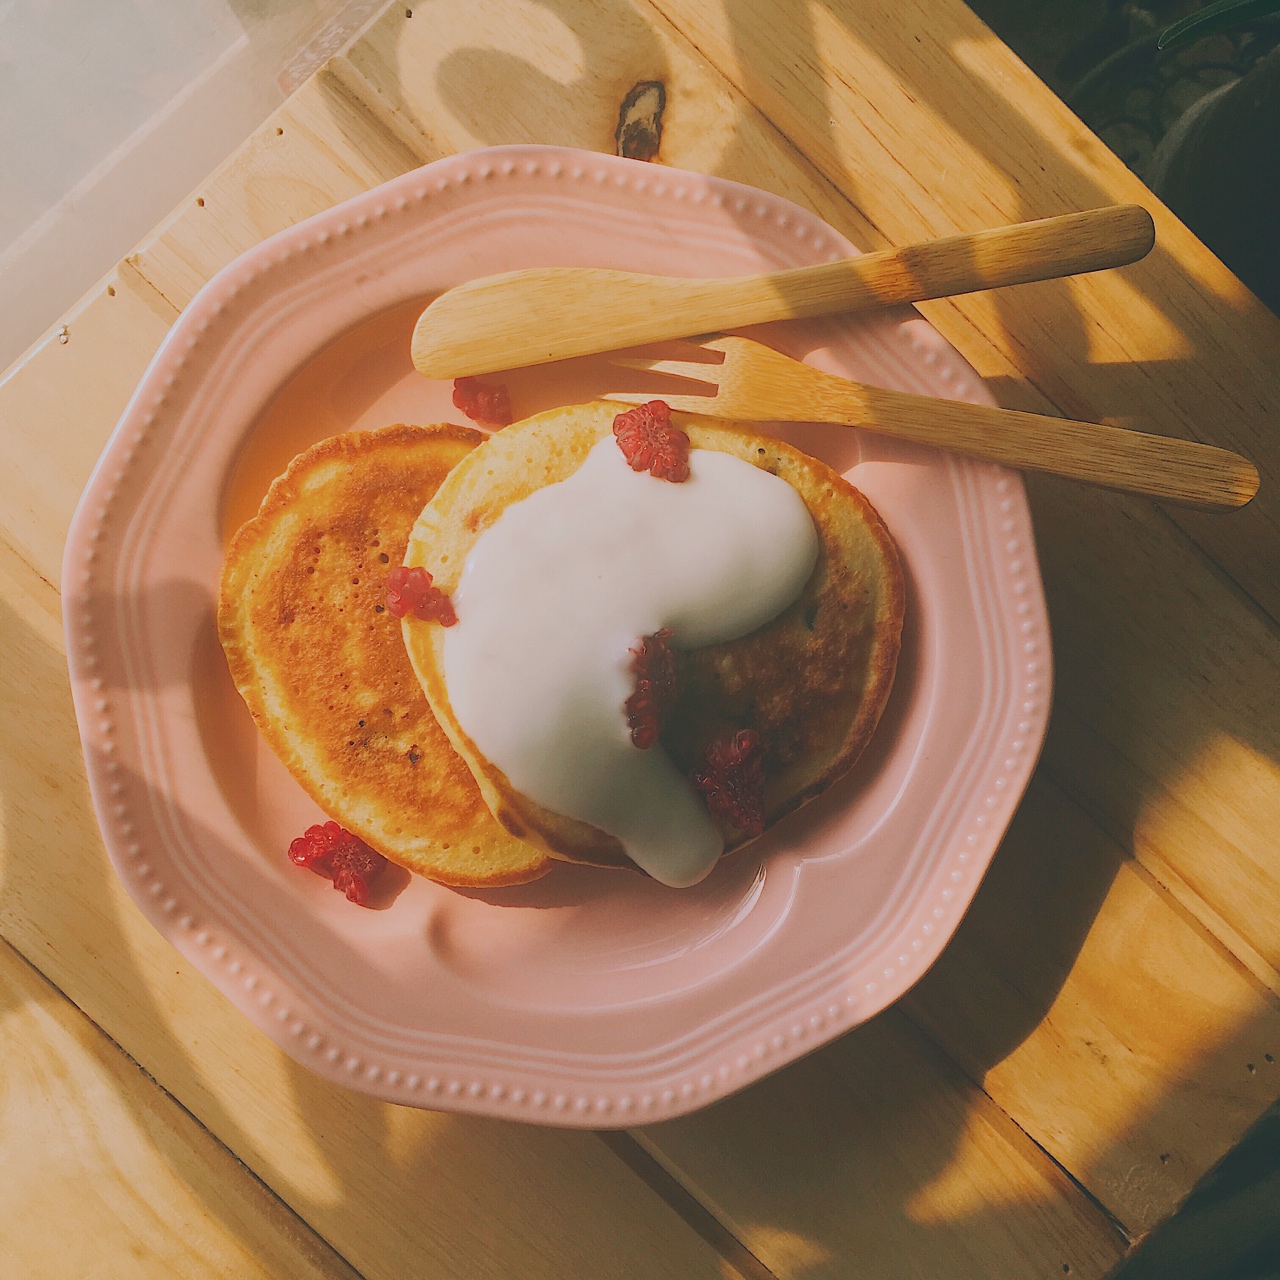 【终极烹饪课程】蓝莓乳酪煎饼配酸奶蜂蜜